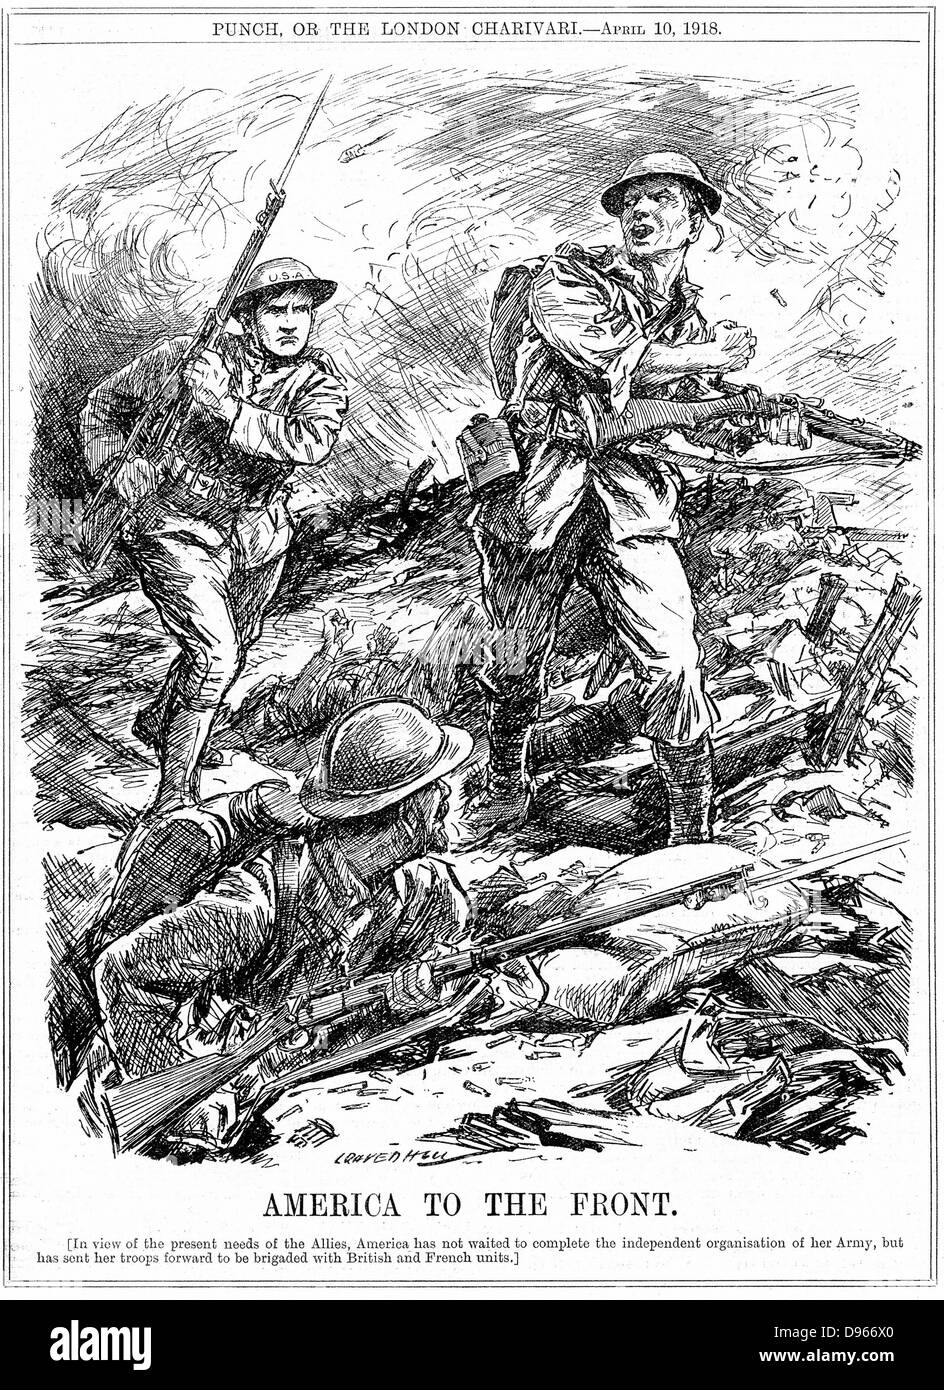 La Première Guerre mondiale : Caricature de L. Ravenhill de 'Punch', Londres, 10 avril 1918, lorsque l'Amérique a envoyé des hommes pour renforcer les troupes alliées avant l'arrivée de l'Armée US principal. Gravure Banque D'Images